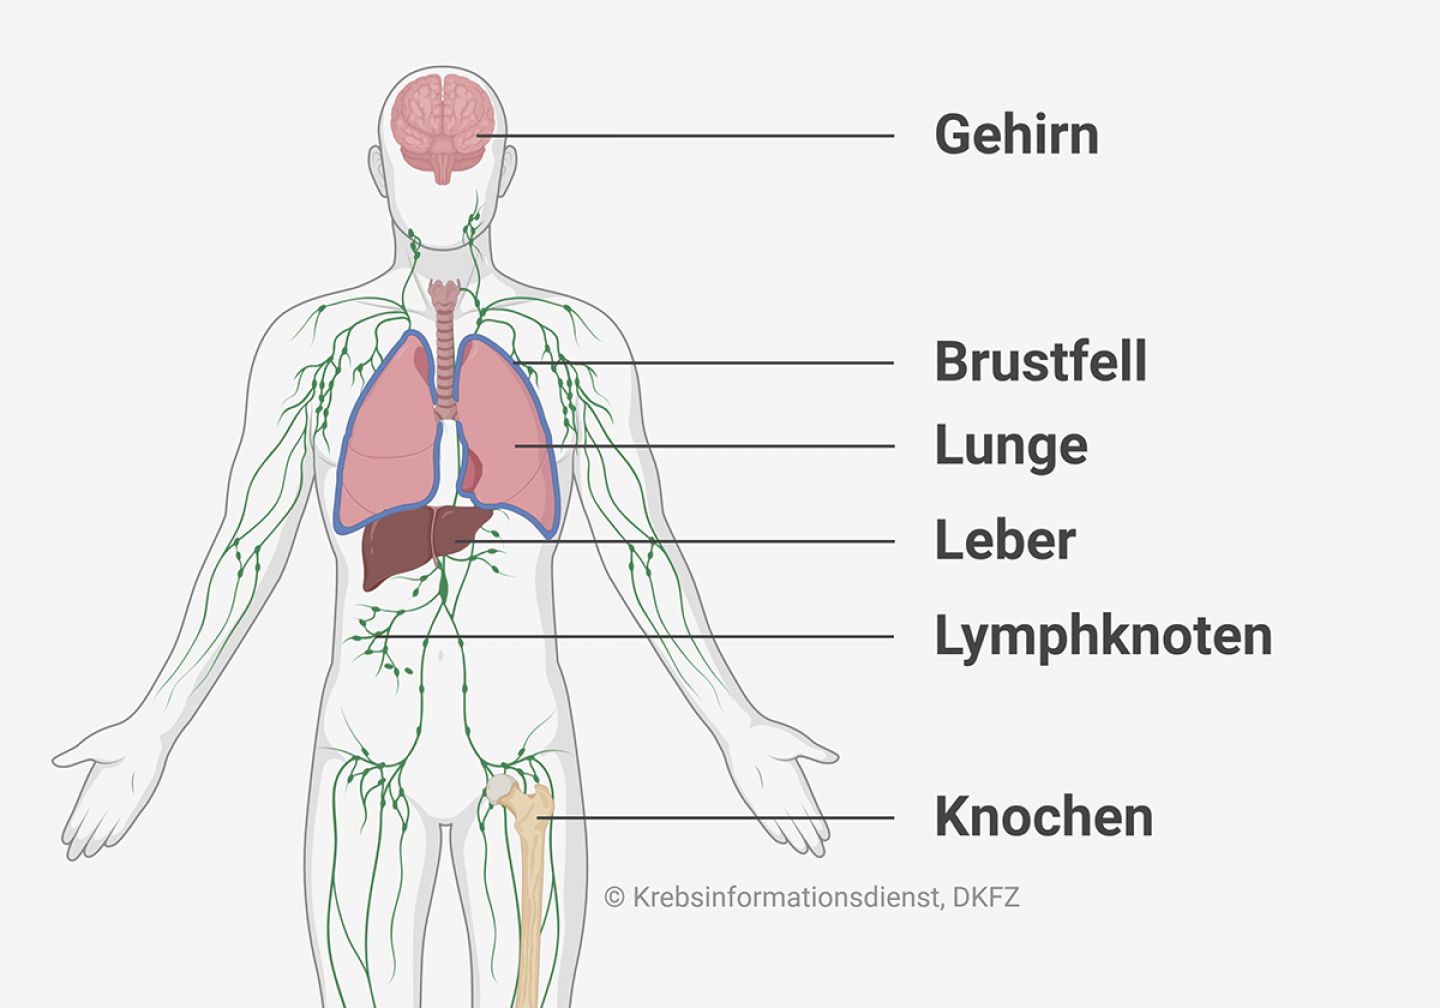 Anatomische Abbildung, die zeigt wo sich beim CUP-Syndrom häufig Metastasen bilden: in Gehirn, Brustfell, Lunge, Leber, Lymphknoten und Knochen.